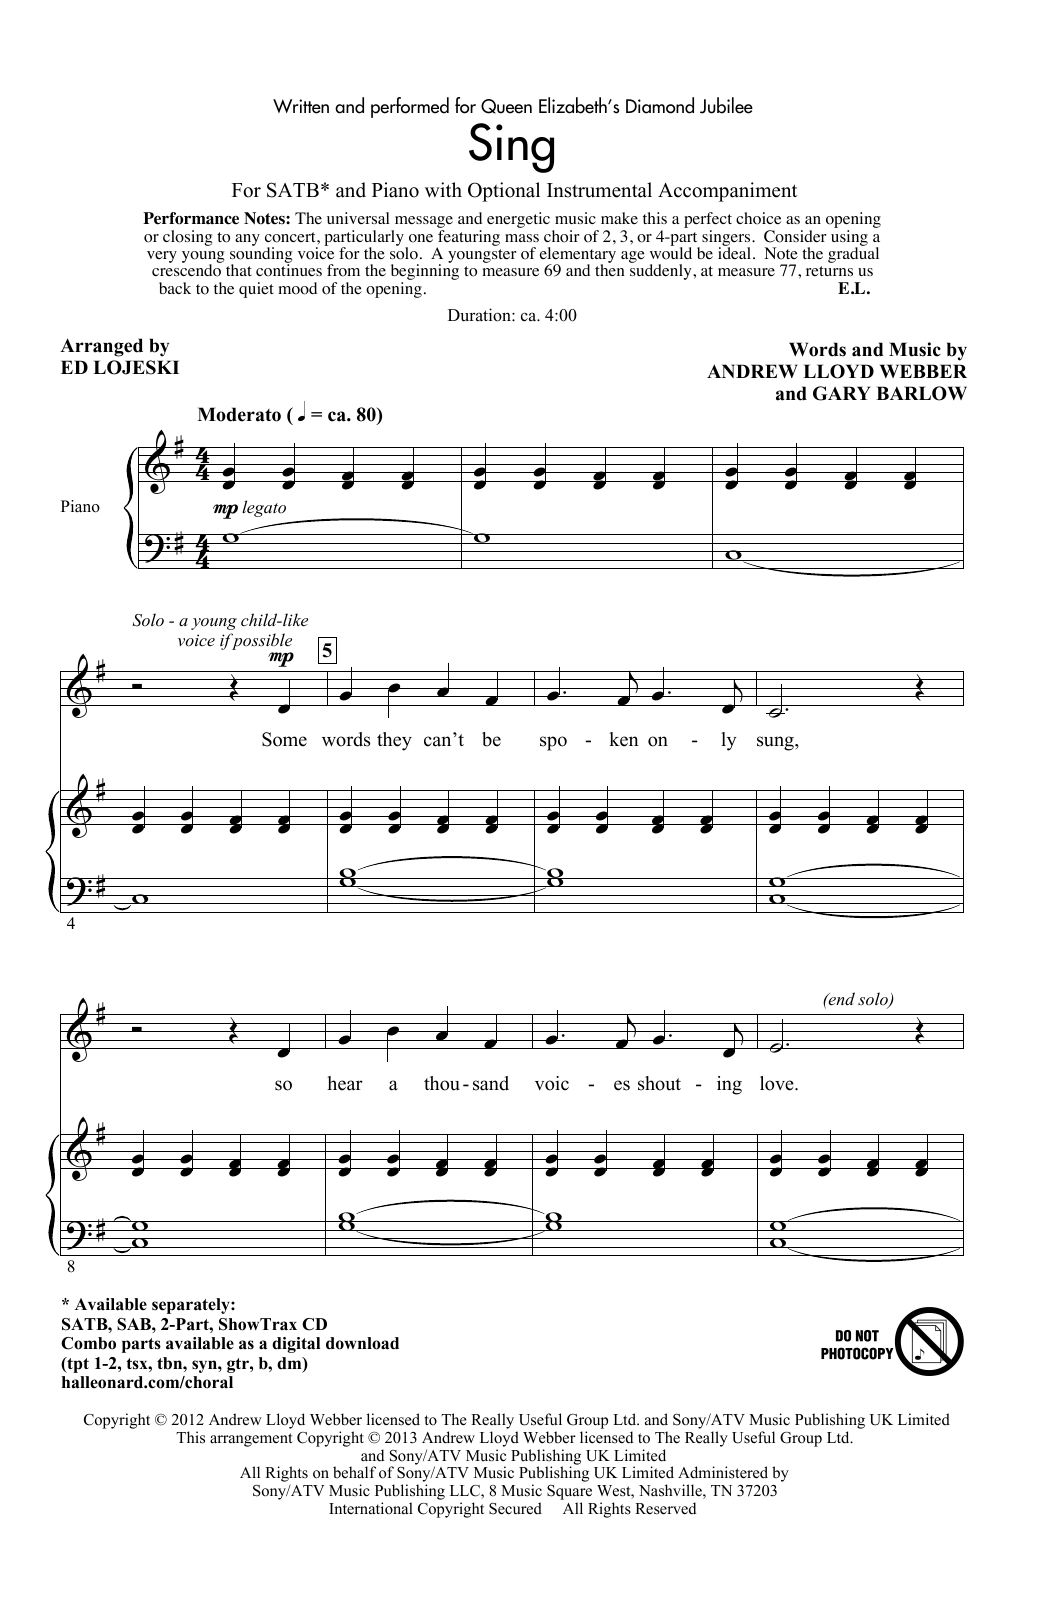 Sing (arr. Ed Lojeski) (SATB Choir) von Andrew Lloyd Webber & Gary Barlow